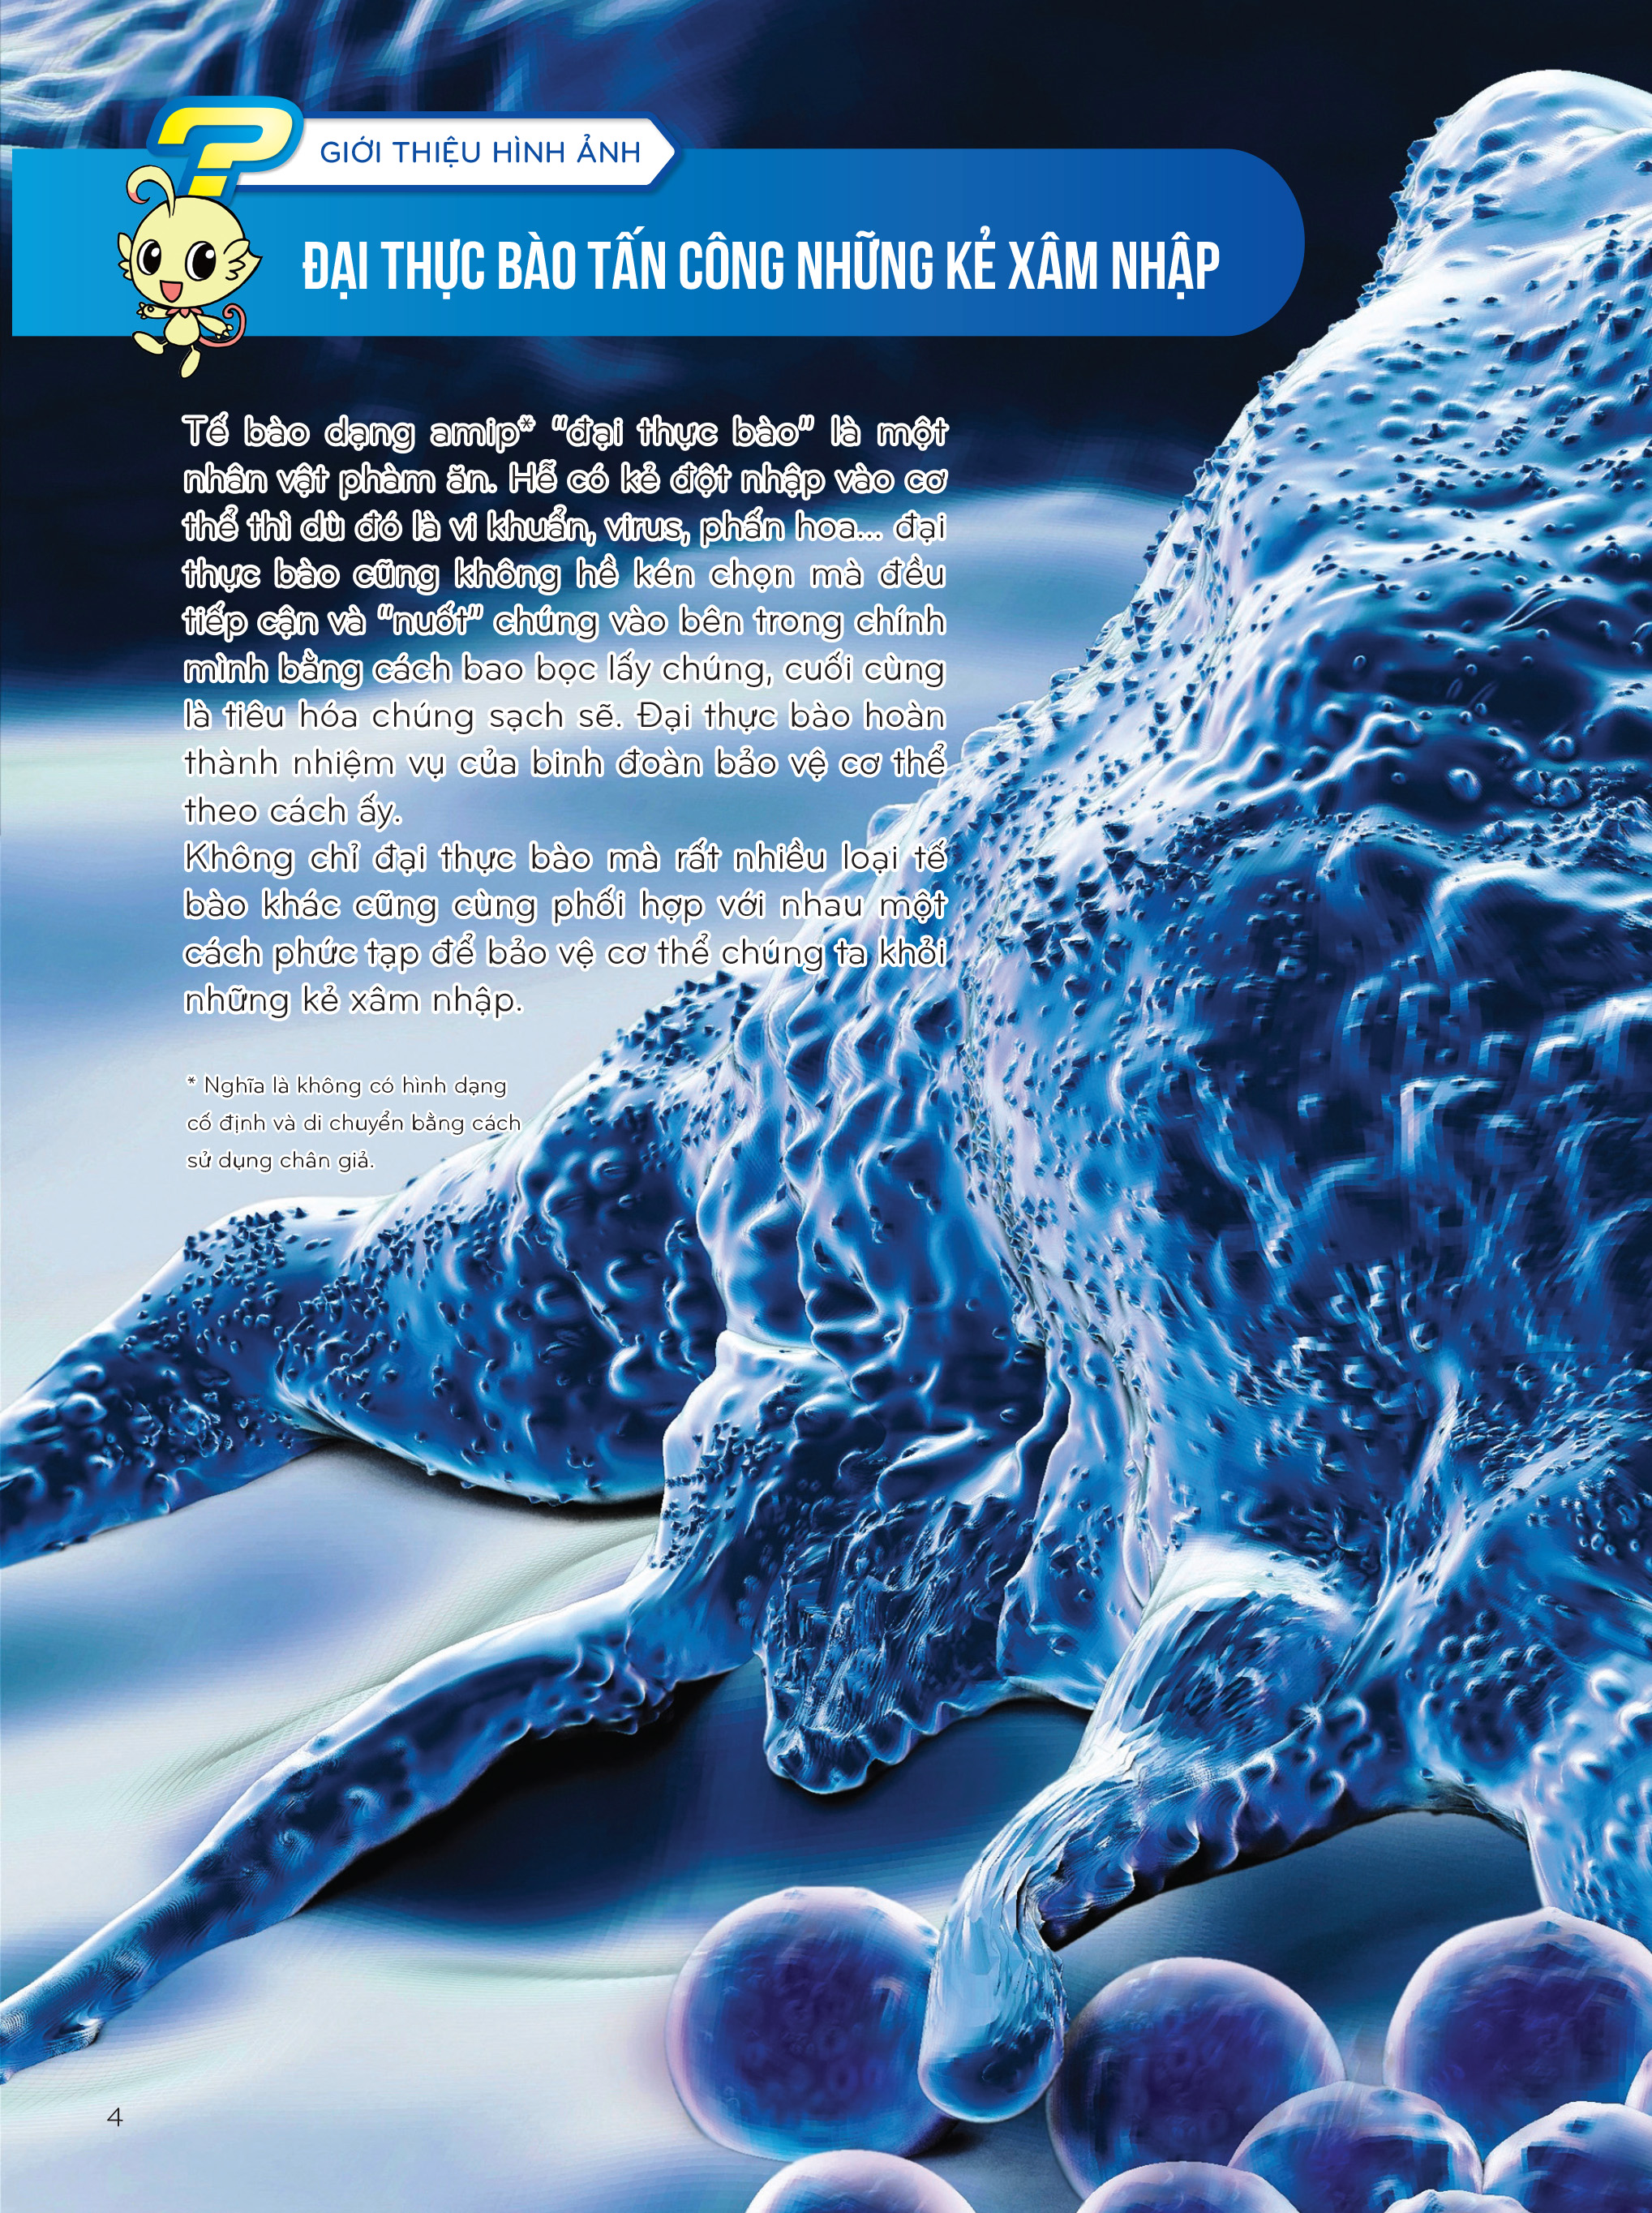 Truyện tranh manga Nhiệm Vụ Khoa Học Kỳ Bí tập 5: Đại Chiến Với Virus